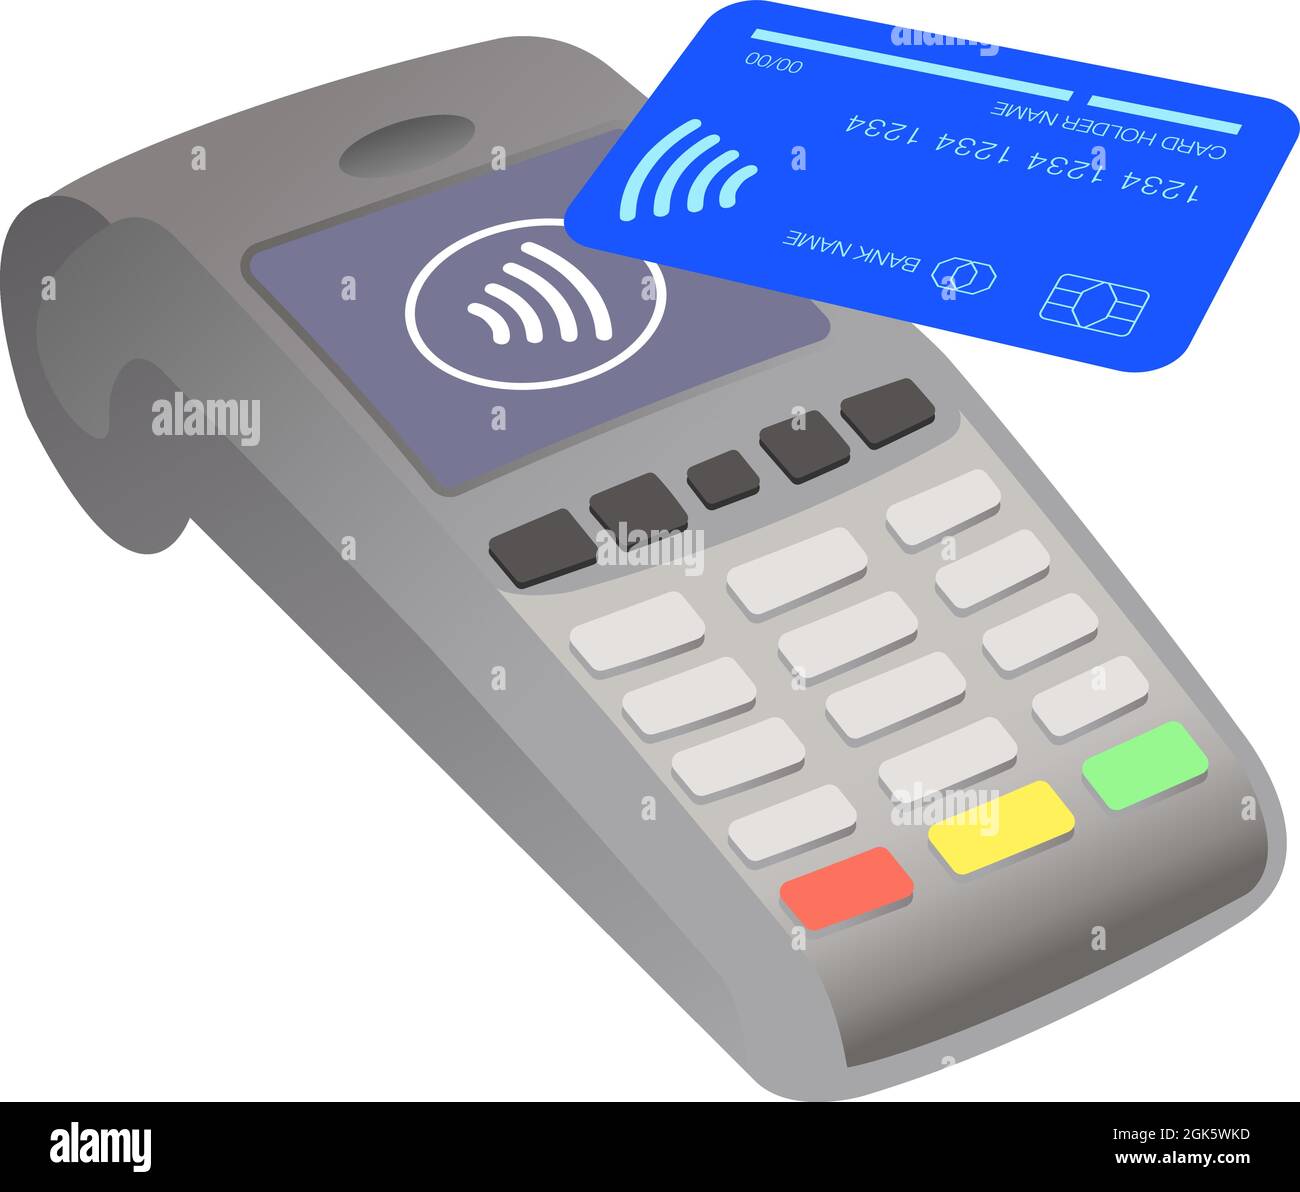 Lector de tarjetas de pago sin contacto tarjeta de crédito azul ilustración de stock vectorial Ilustración del Vector